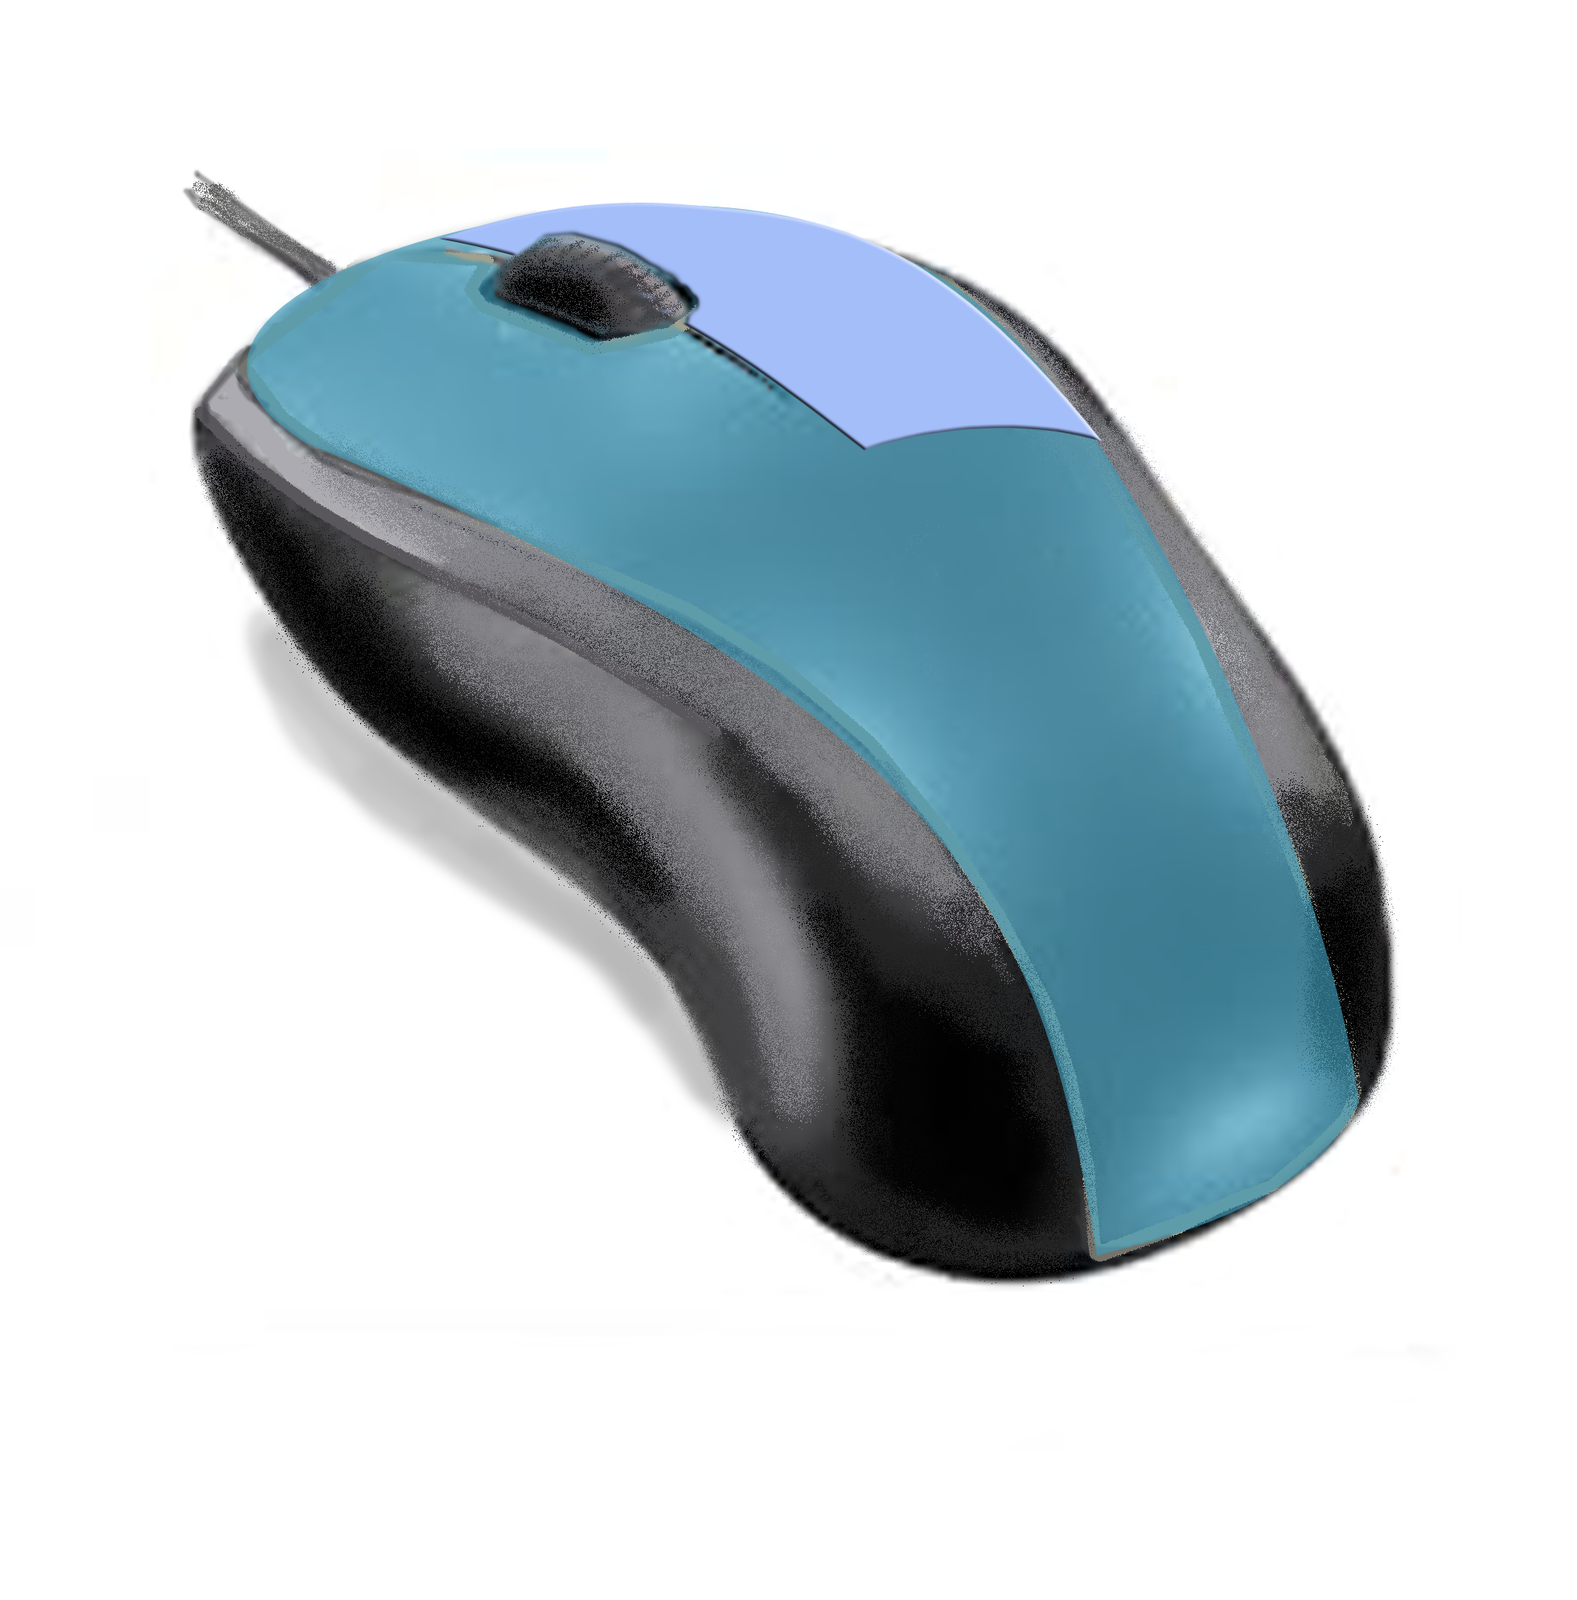 Ilustracja myszy komputerowej z zaznaczonym prawym przyciskiem